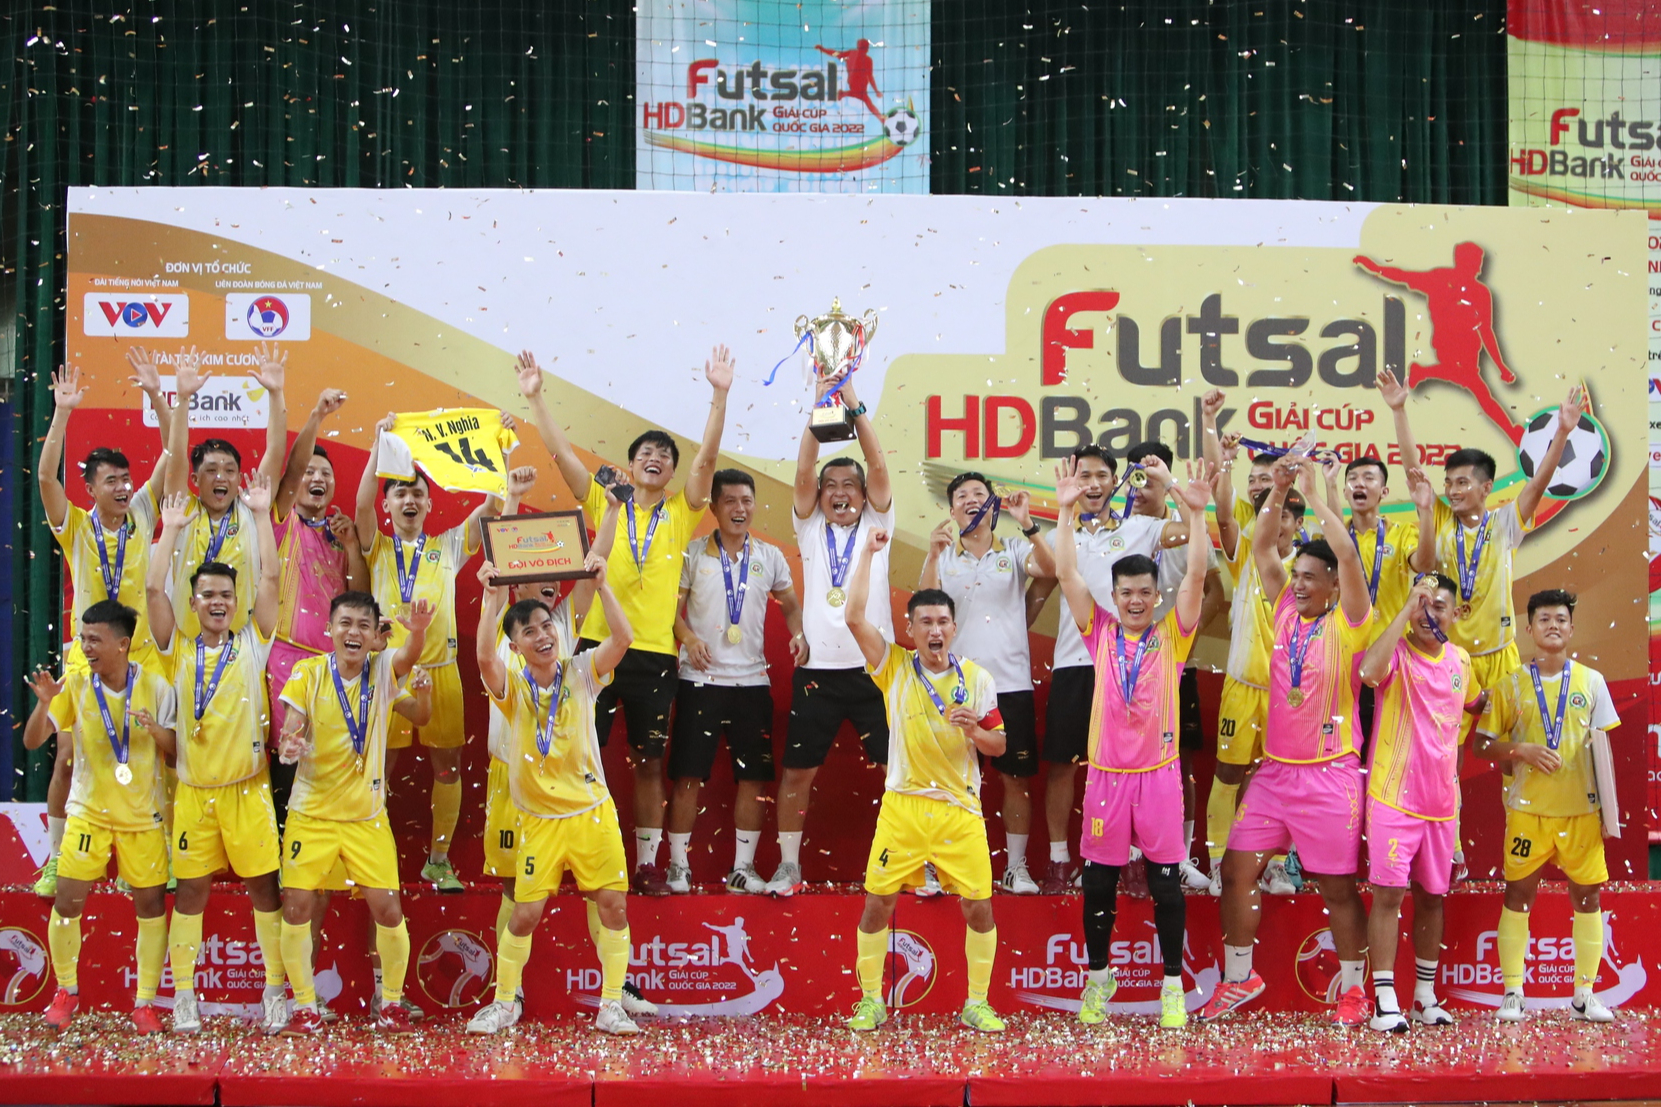 CLB Thái Sơn Nam tiếp tục trở thành cựu vương giải futsal quốc nội - Ảnh 8.